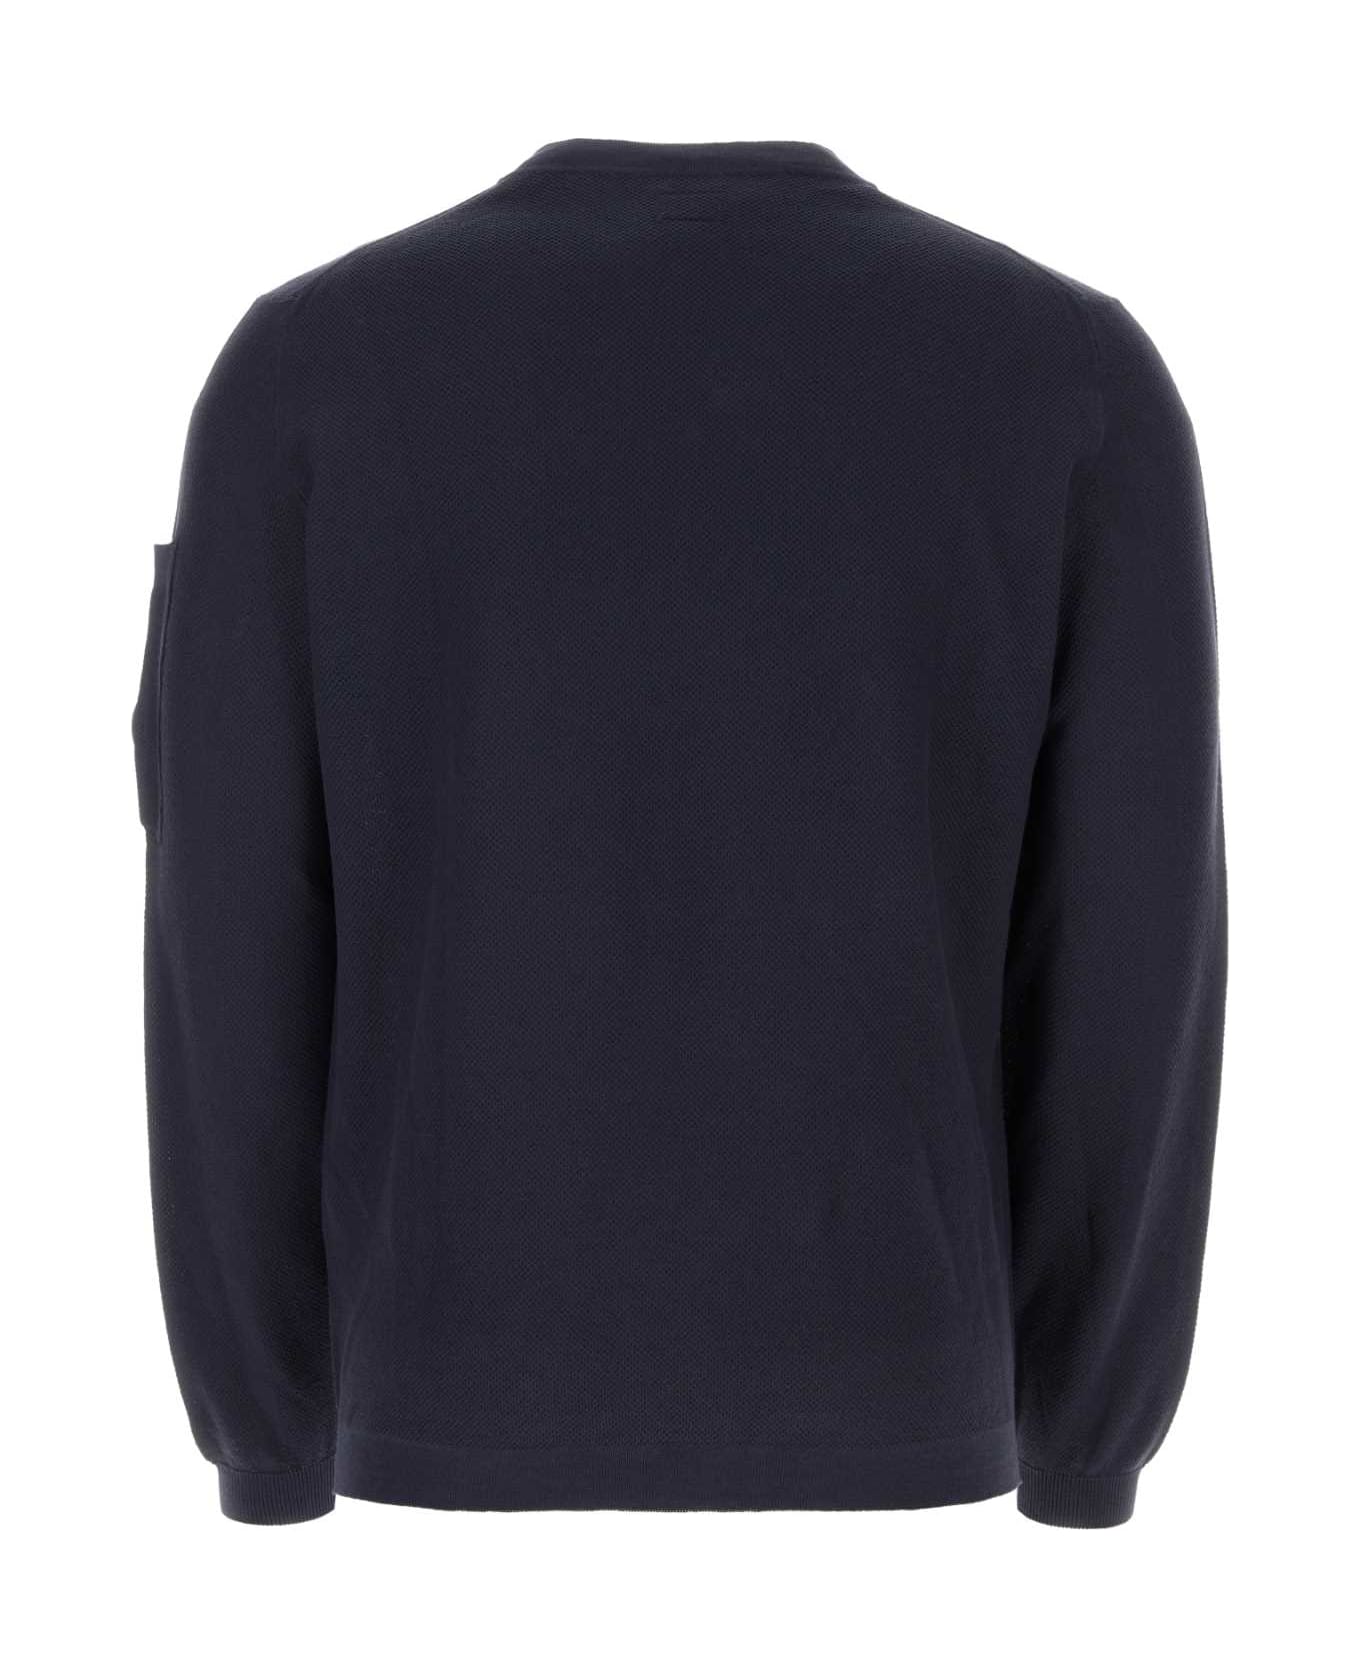 C.P. Company Dark Blue Cotton Sweater - TOTALECLIPSE